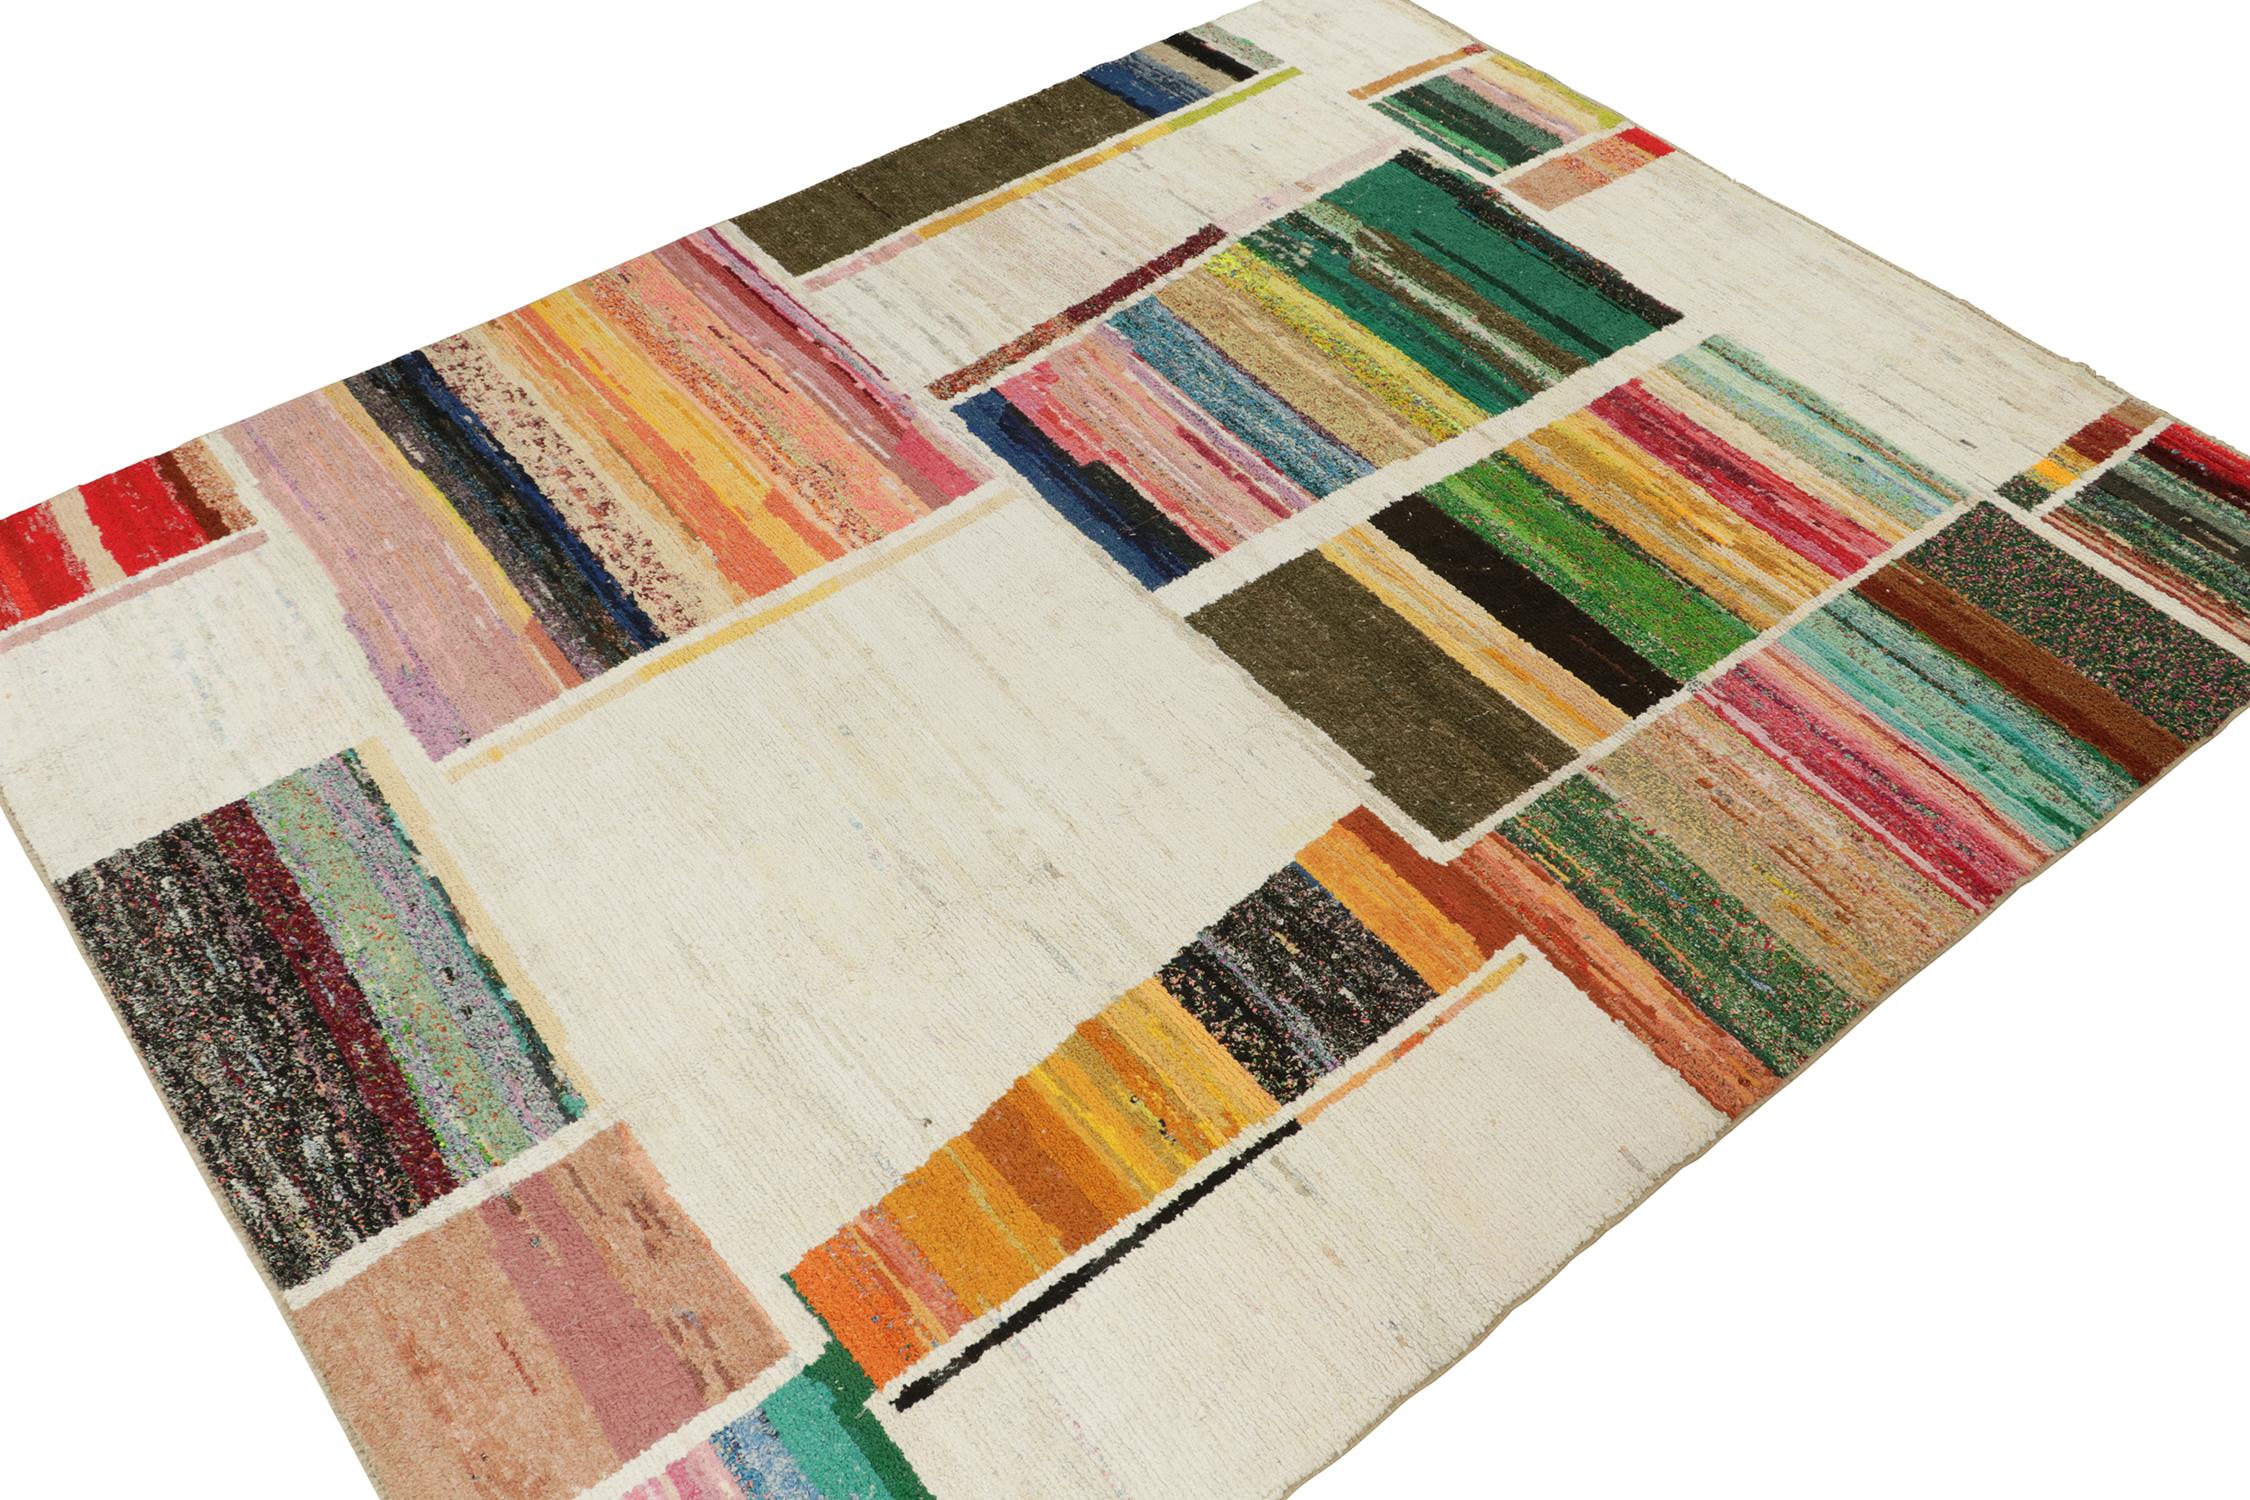 Ce tapis 10x13 est un nouvel ajout audacieux à la collection de tapis marocains de Rug & Kilim. Noué à la main en laine, il s'inspire des designs berbères dans le style boucherouite avec une vibrante polychromie.

Plus loin dans le Design :

Ce jeu